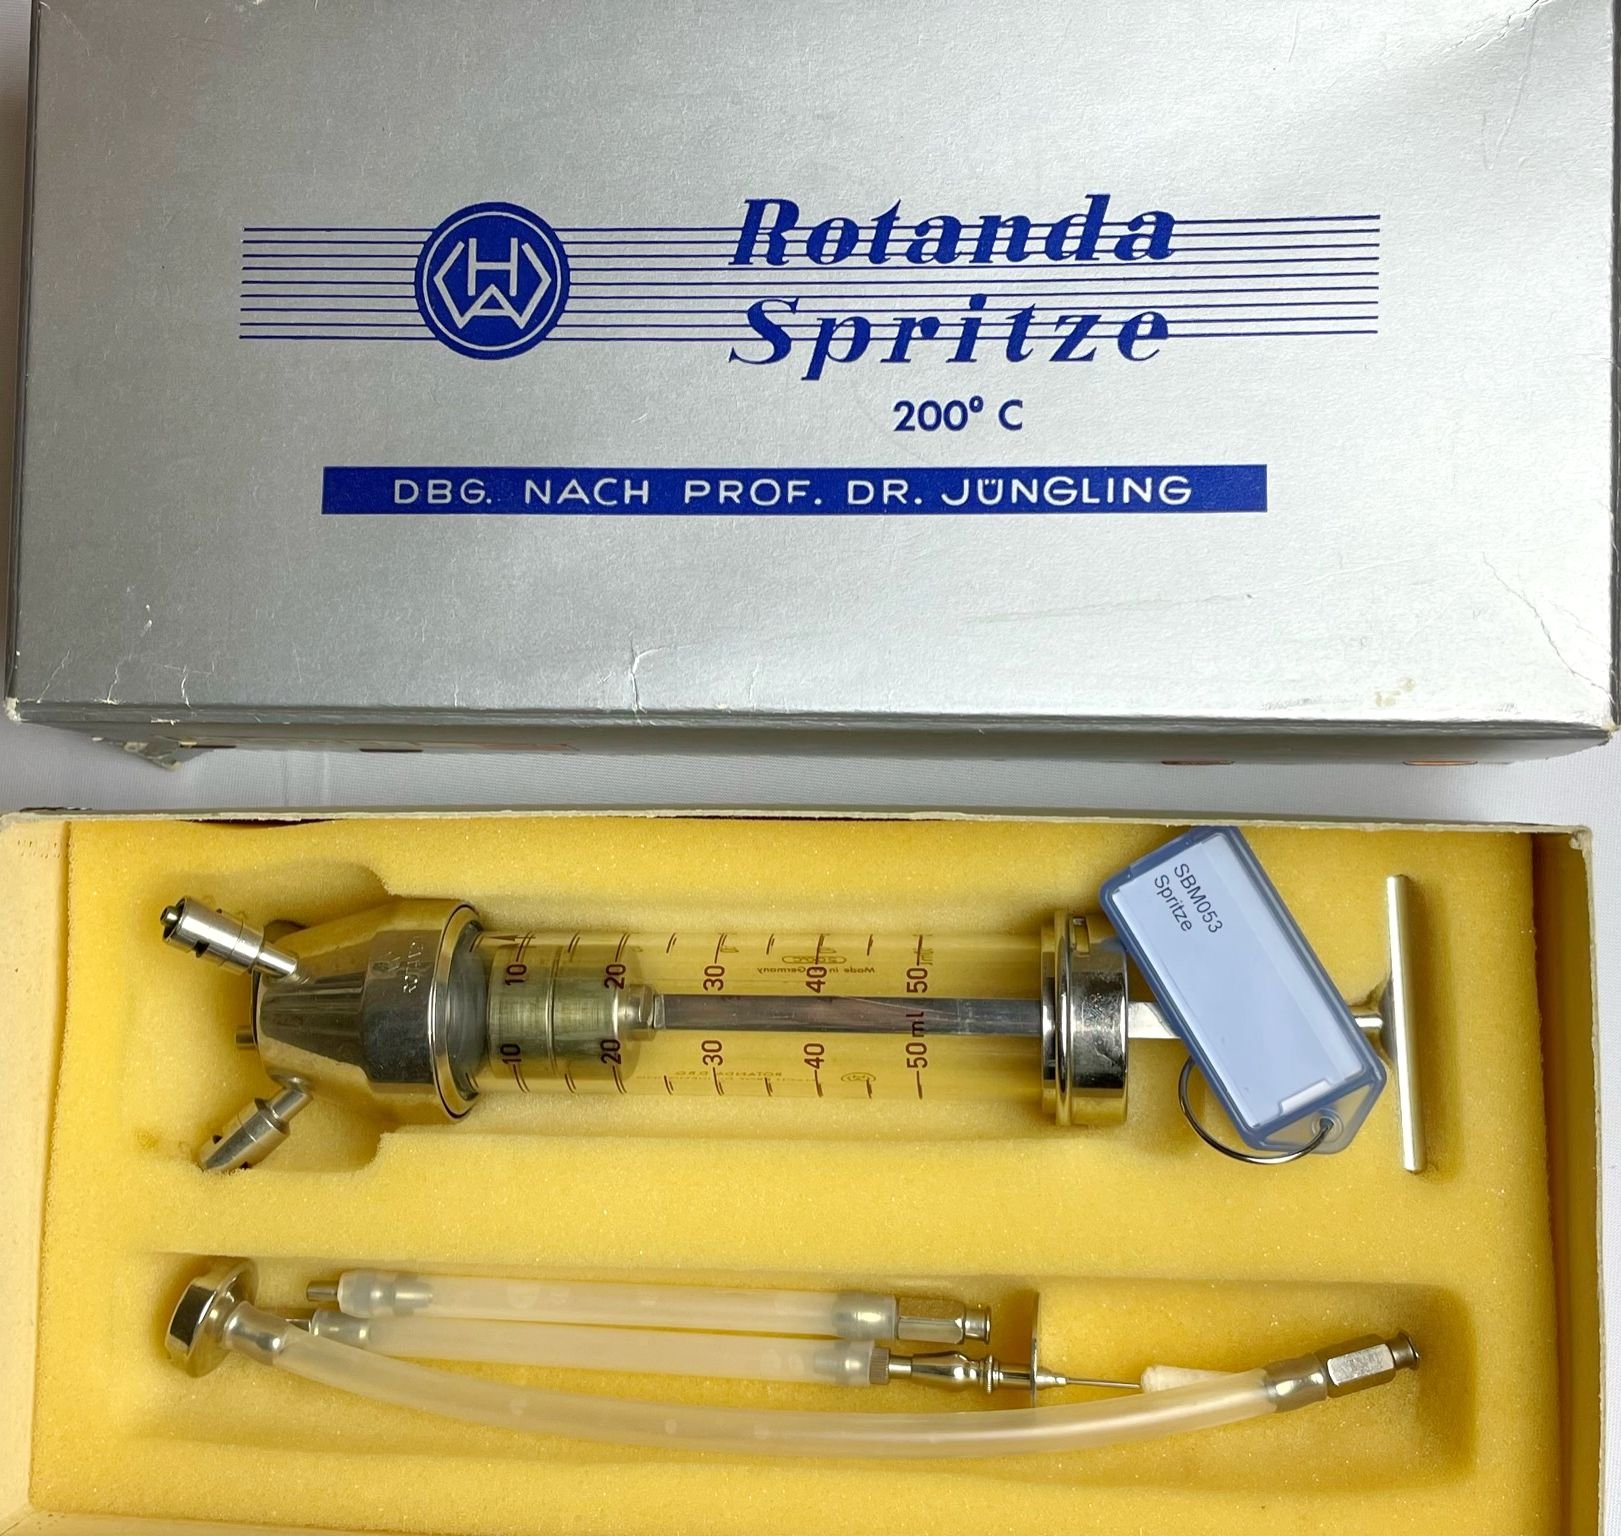 Rotanda-I Spritze (Krankenhausmuseum Bielefeld e.V. CC BY-NC-SA)